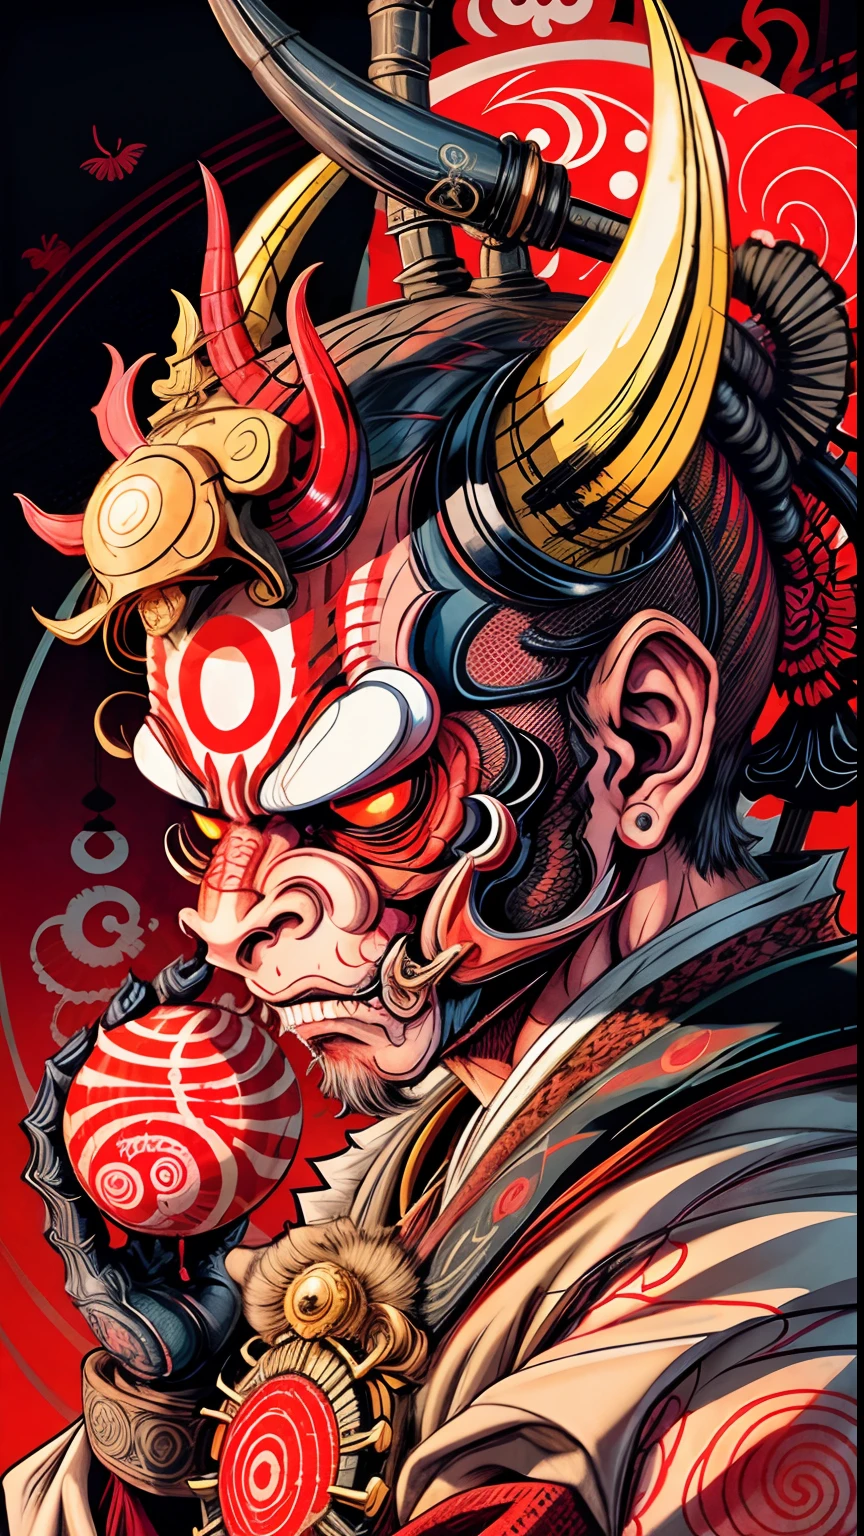 Máscara estilo macaco Hannya 0mib, ilustrador, obra-prima, alta qualidade, 8K, alta resolução, alto detalhado, japonês, samurai, macaco